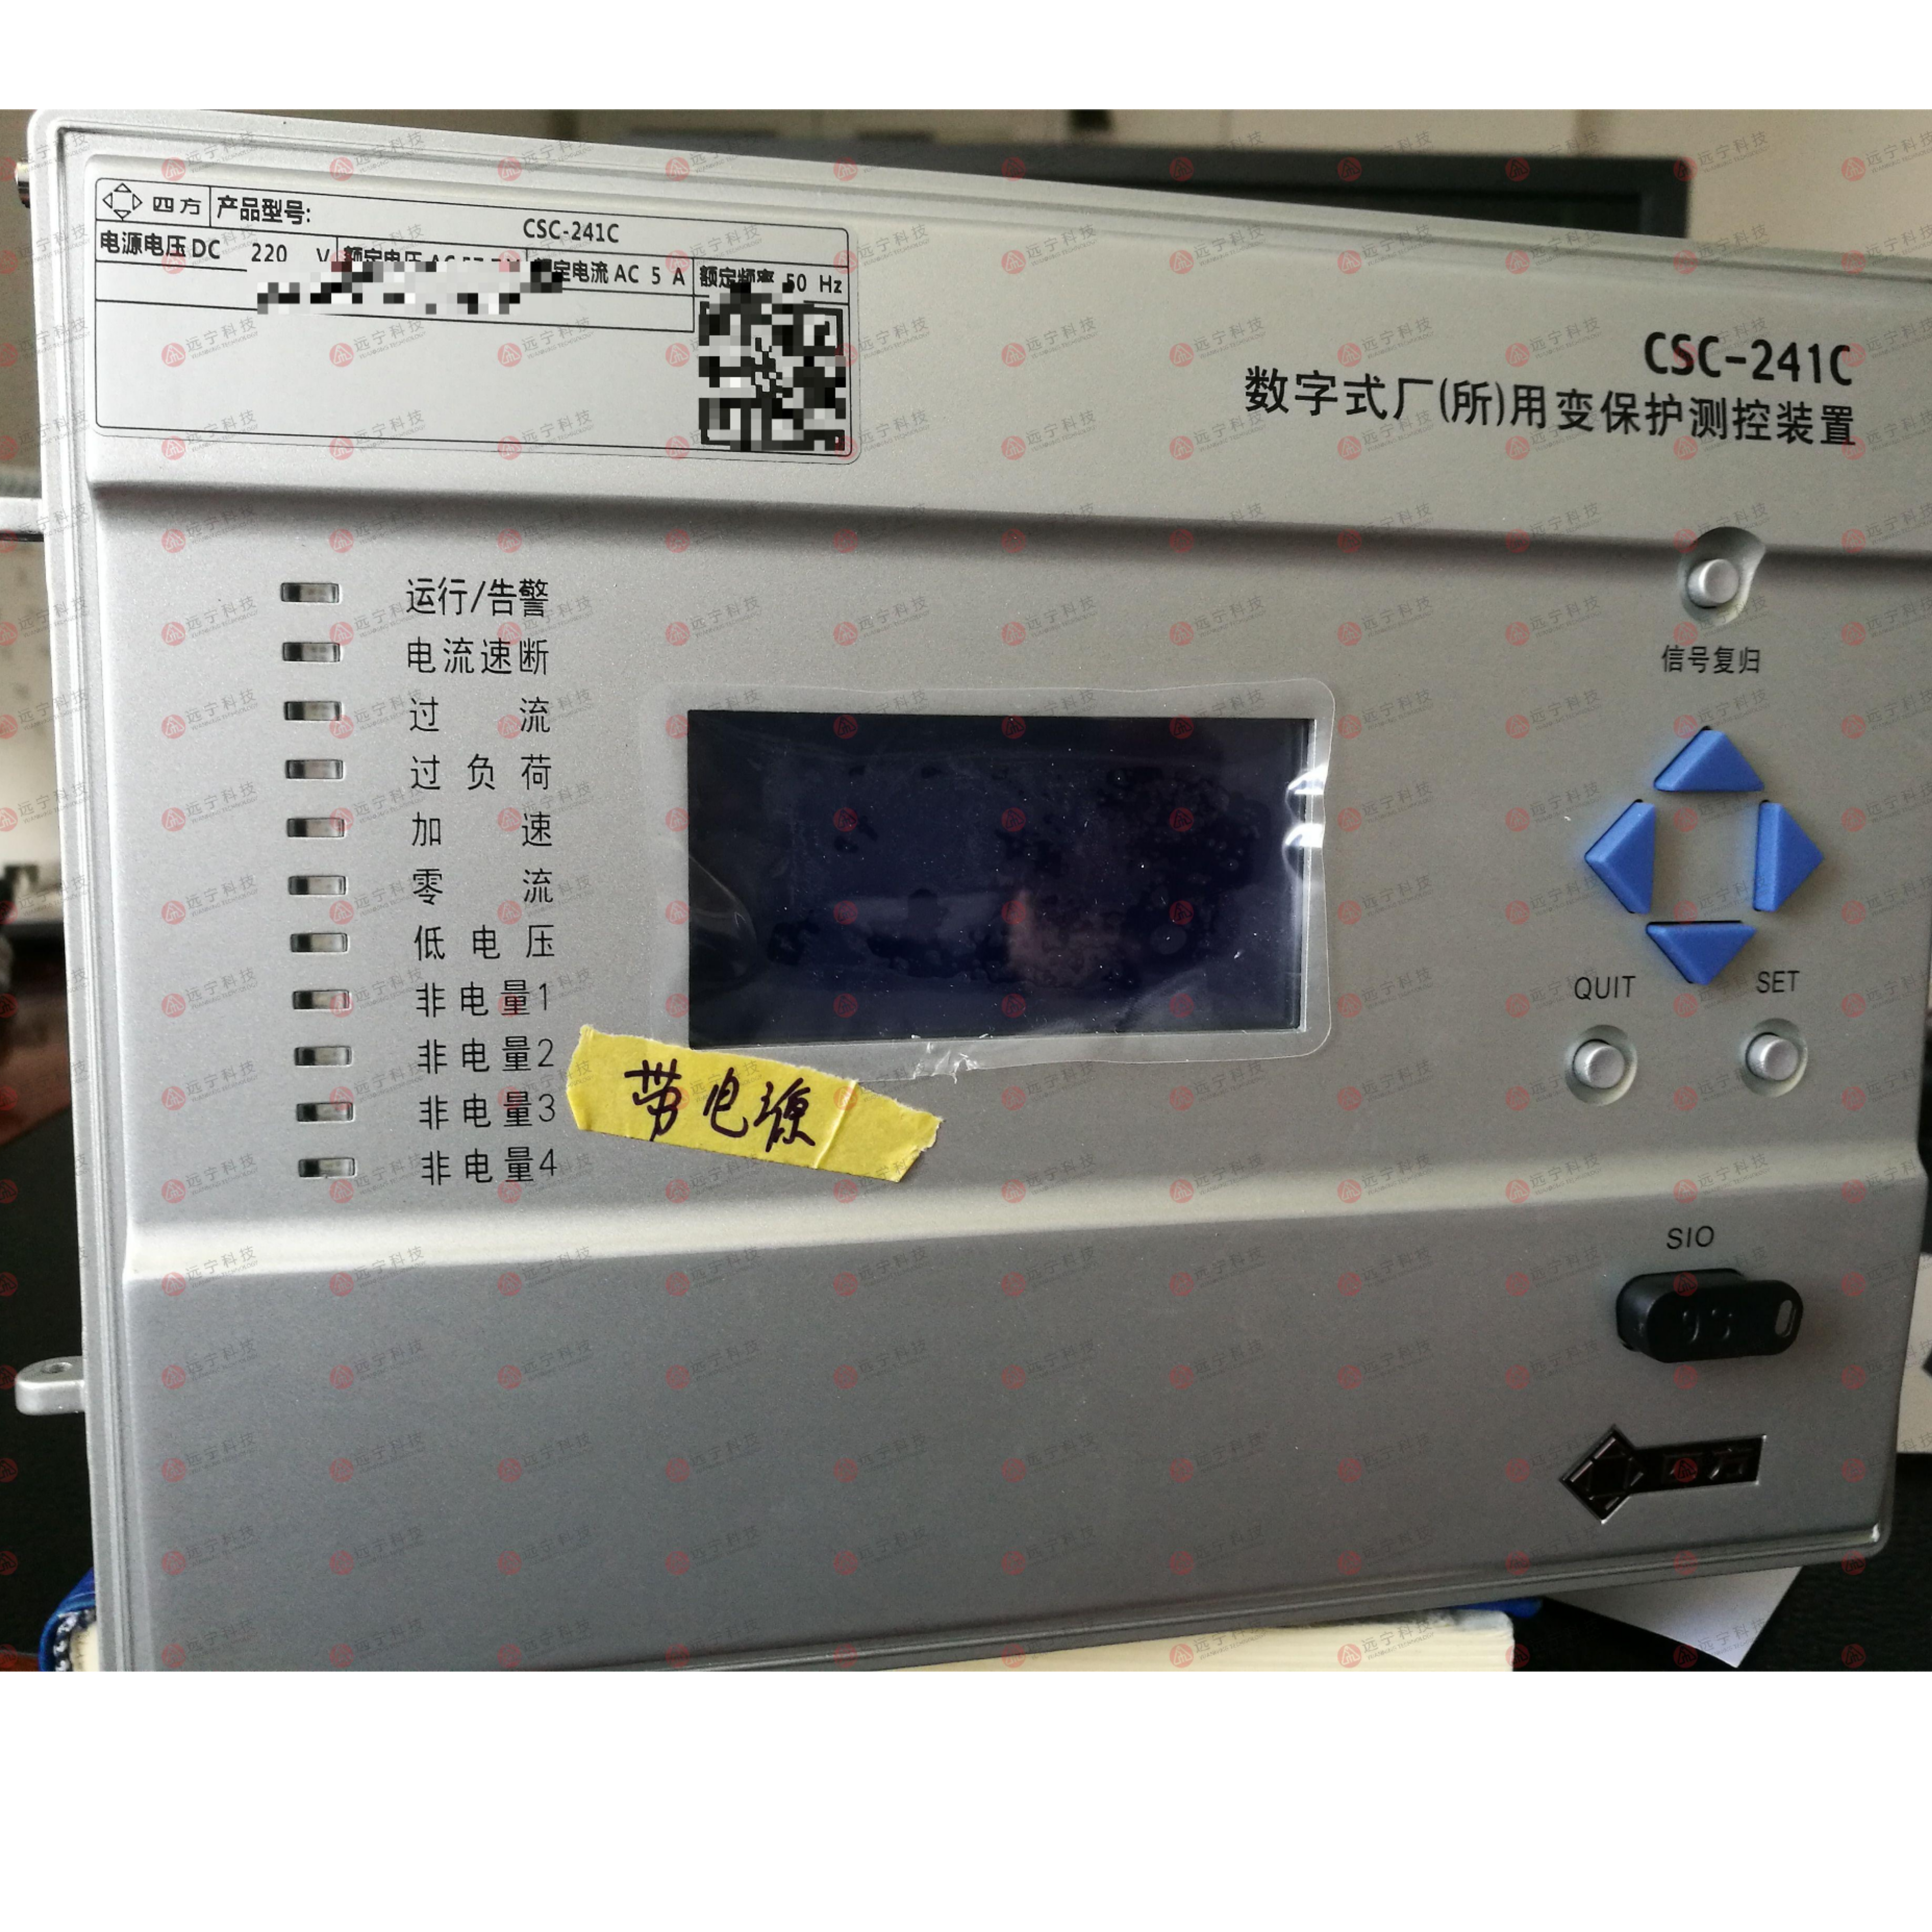 北京四方CSC-241C 数字式厂所用变保护测控装置